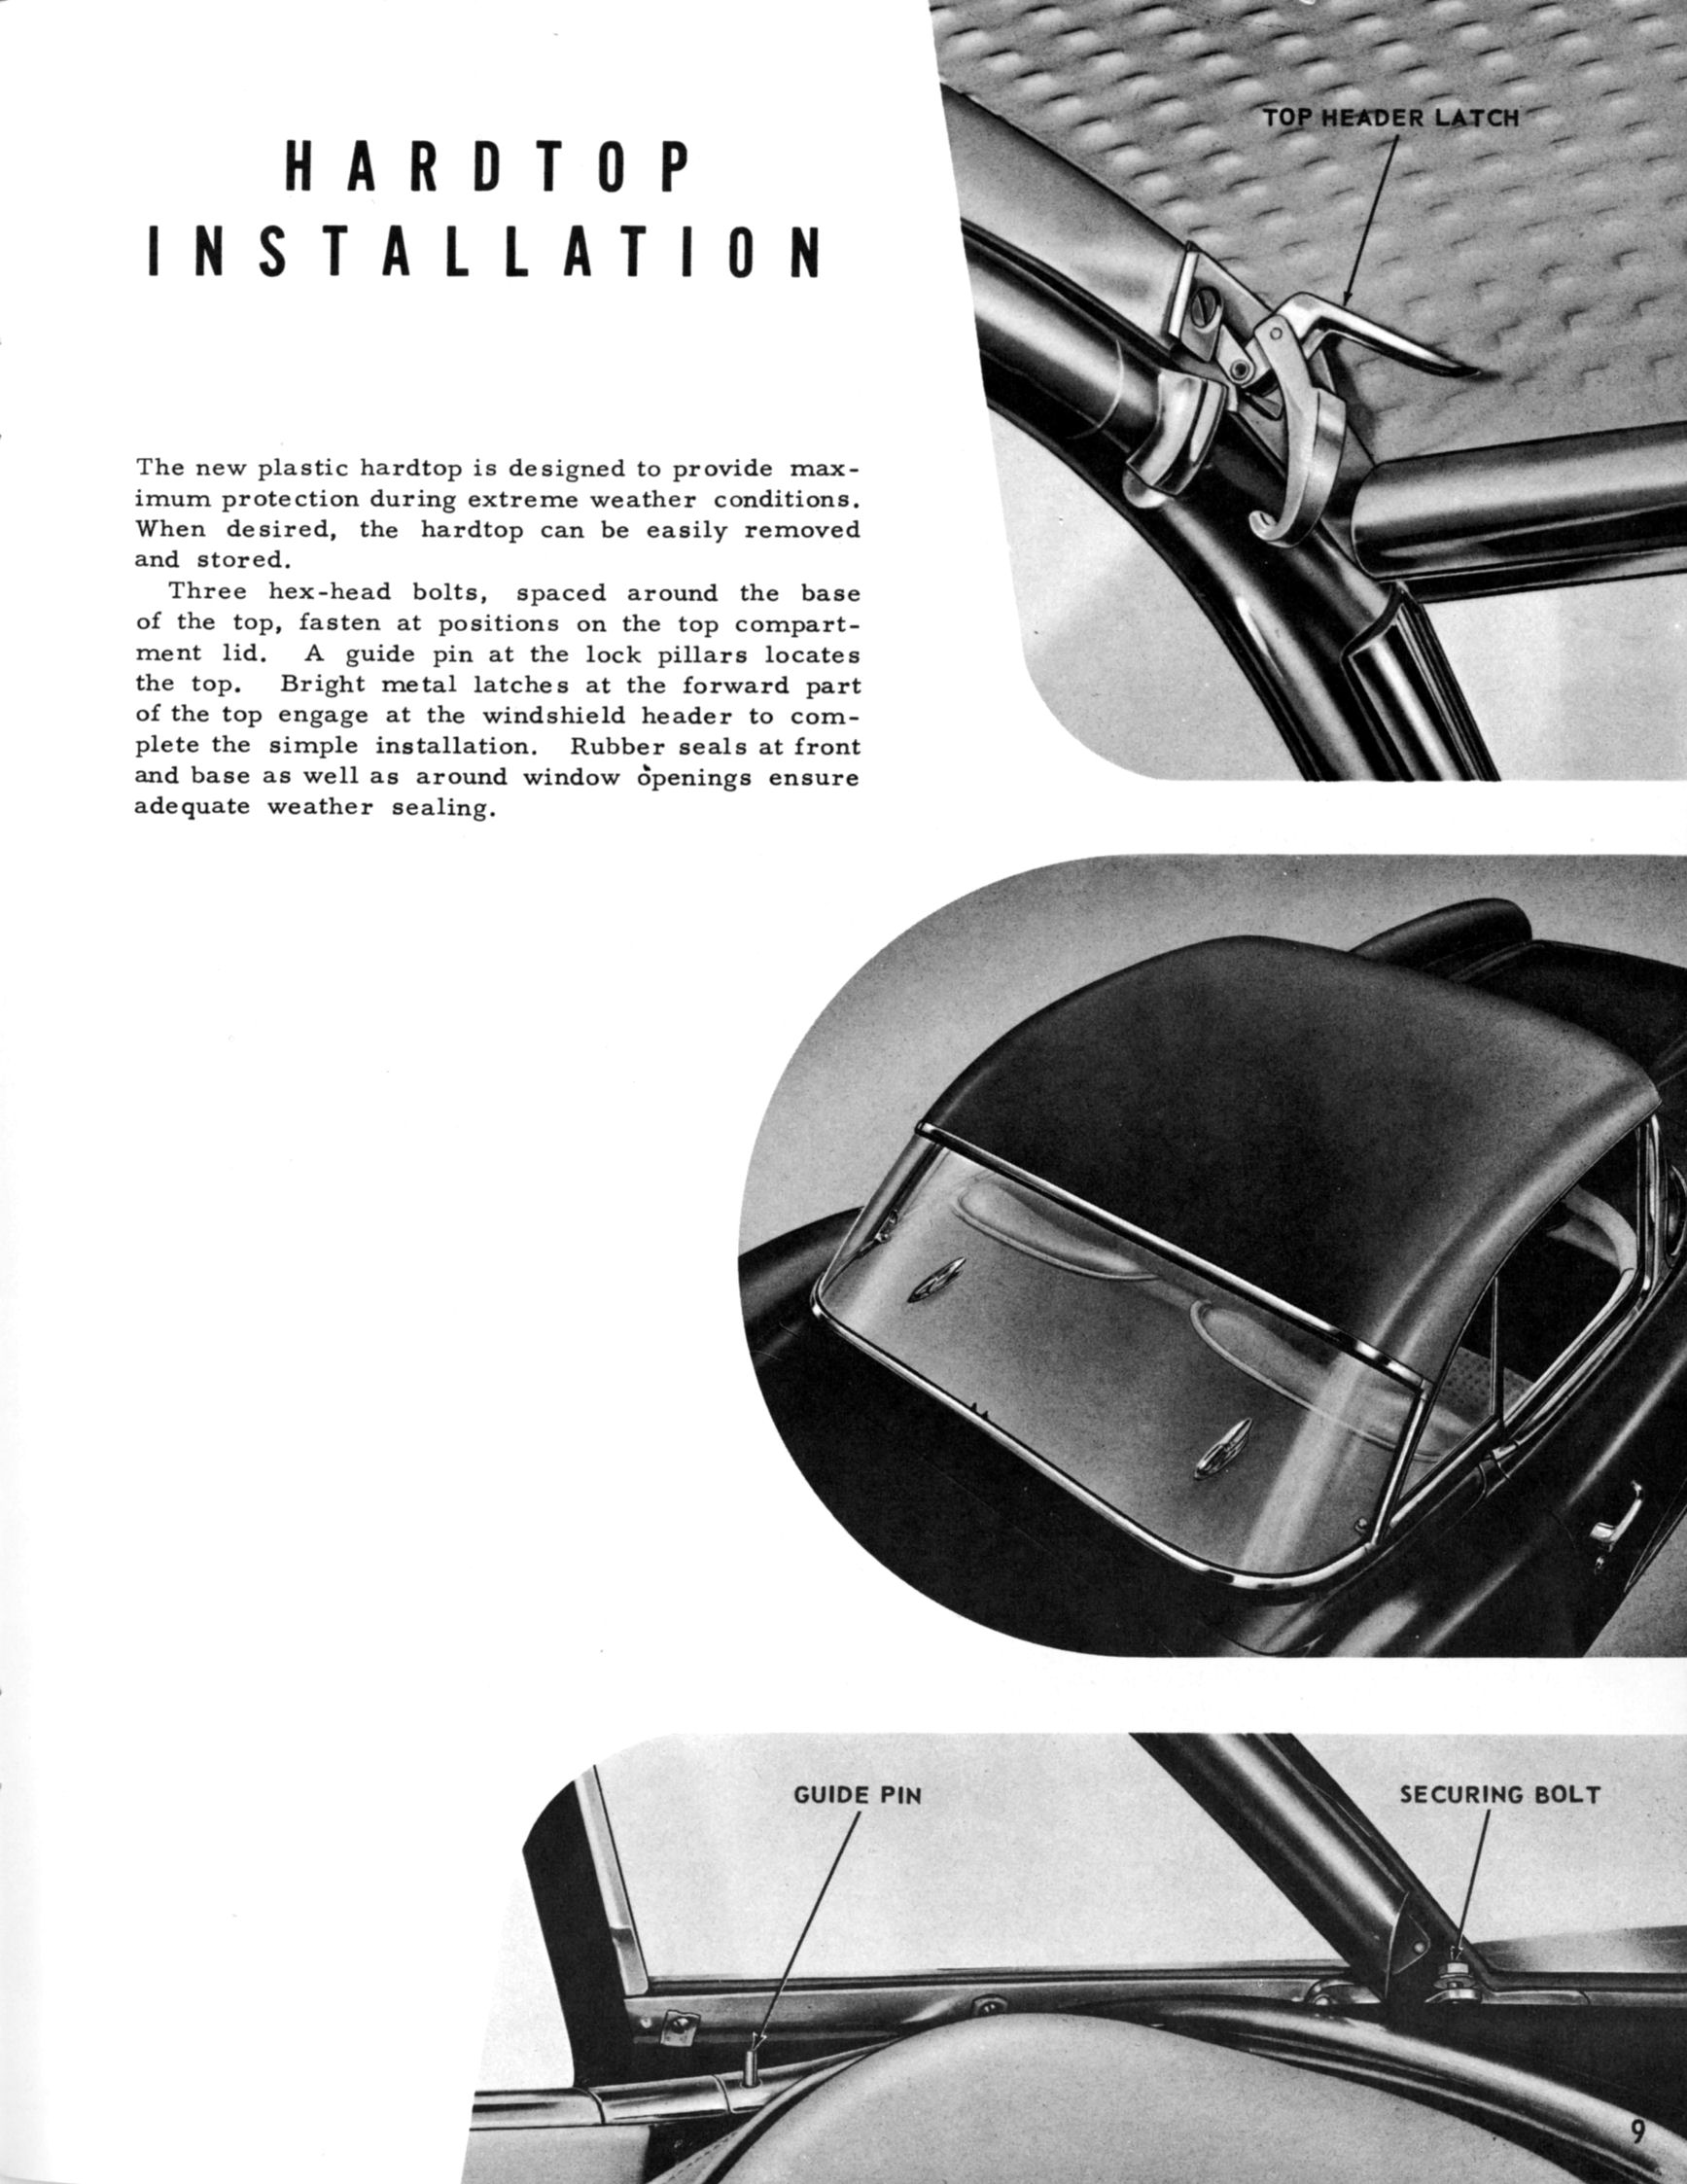 1956-57_Corvette_Engineering_Achievements_Page_09